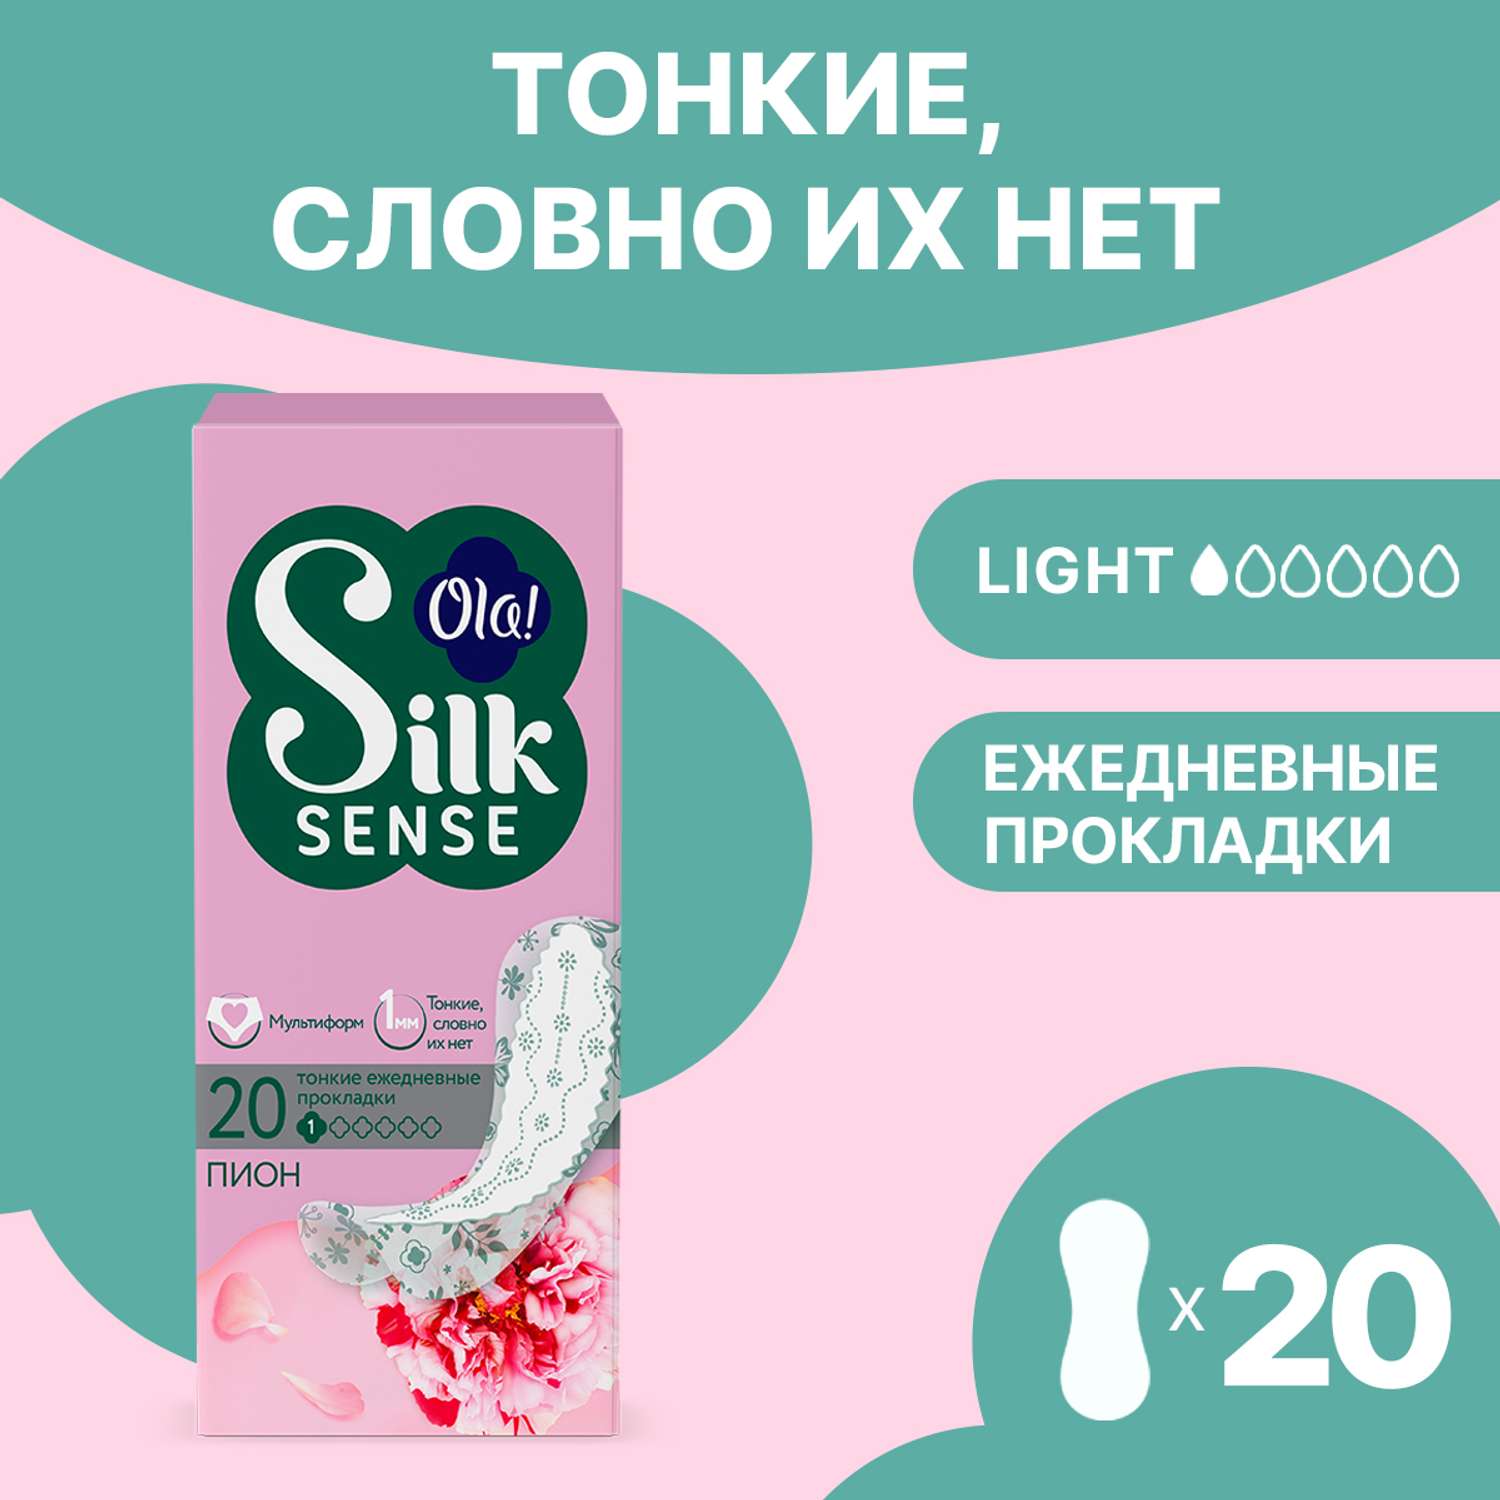 Ежедневные прокладки Ola! Silk Sense Light ультратонкие аромат Белый пион 20 шт - фото 1